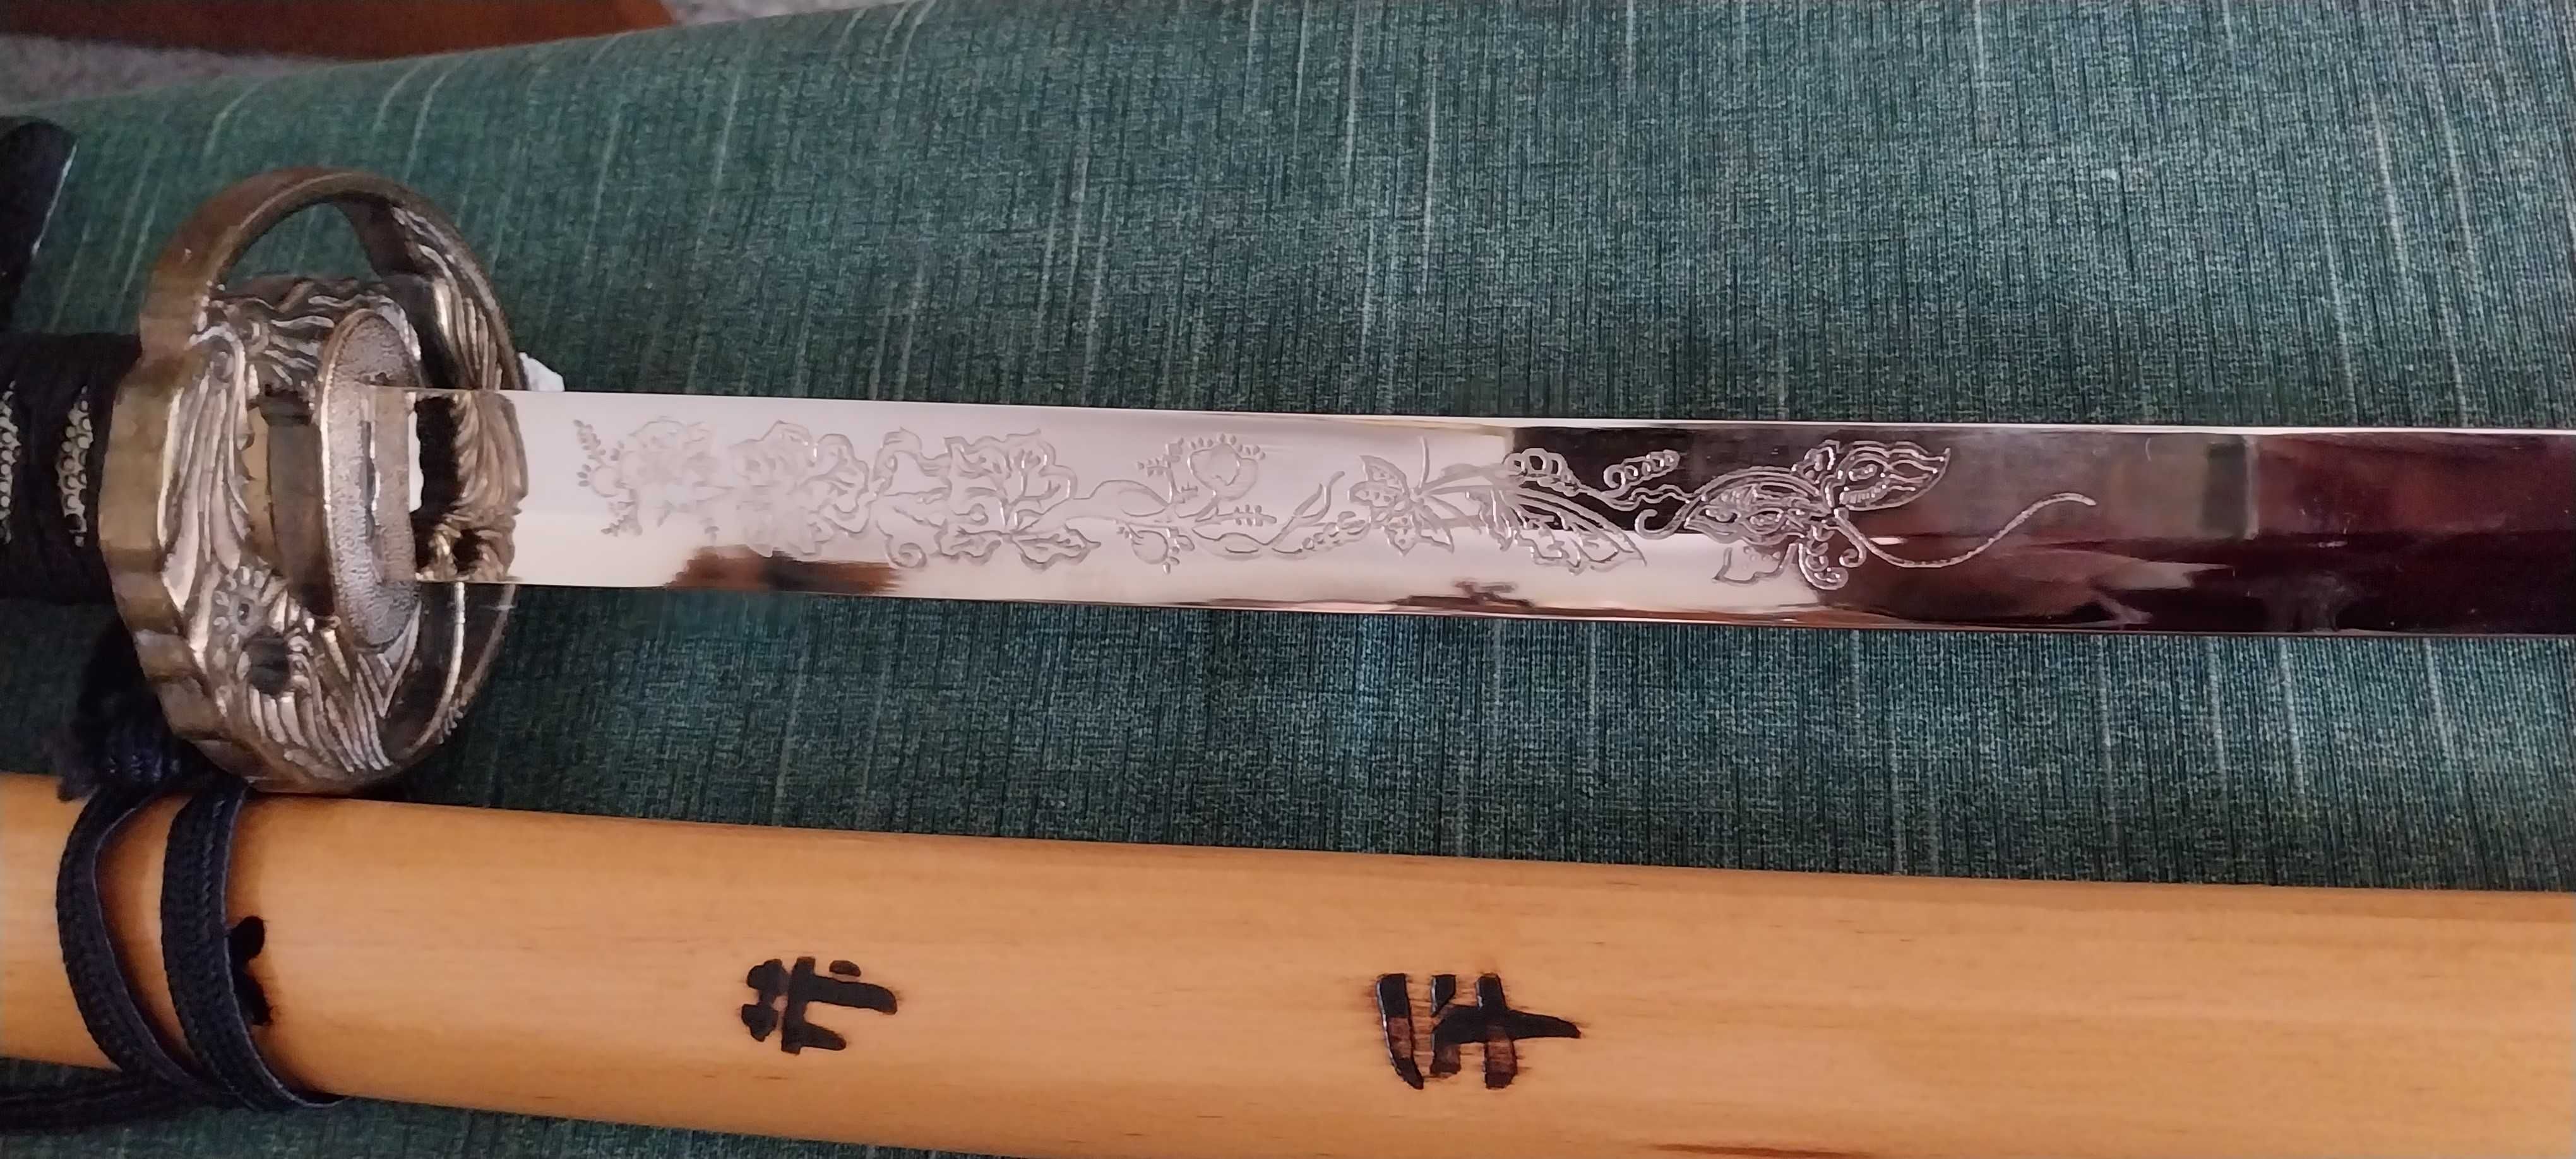 Espadas decorativas réplica de samurai